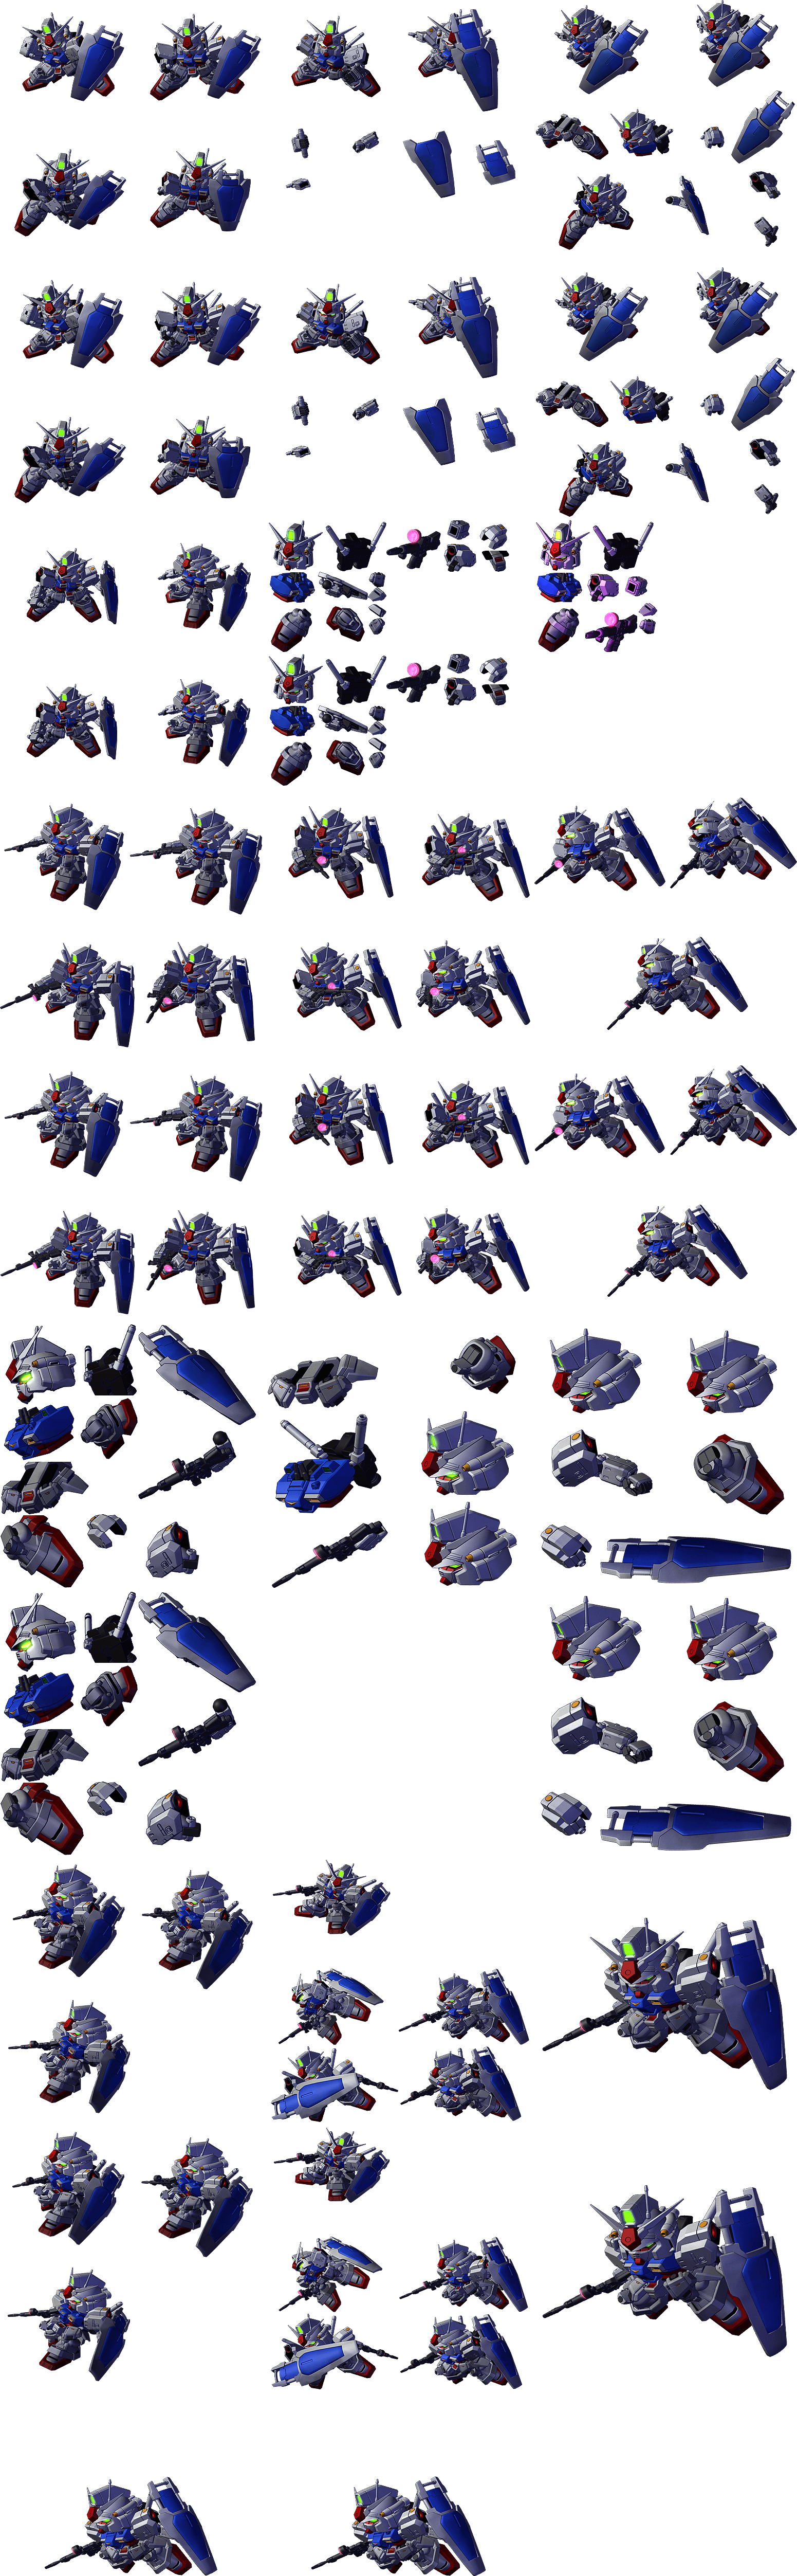 SD Gundam G Generation Spirits - Gundam Unit 1 Zephyranthes